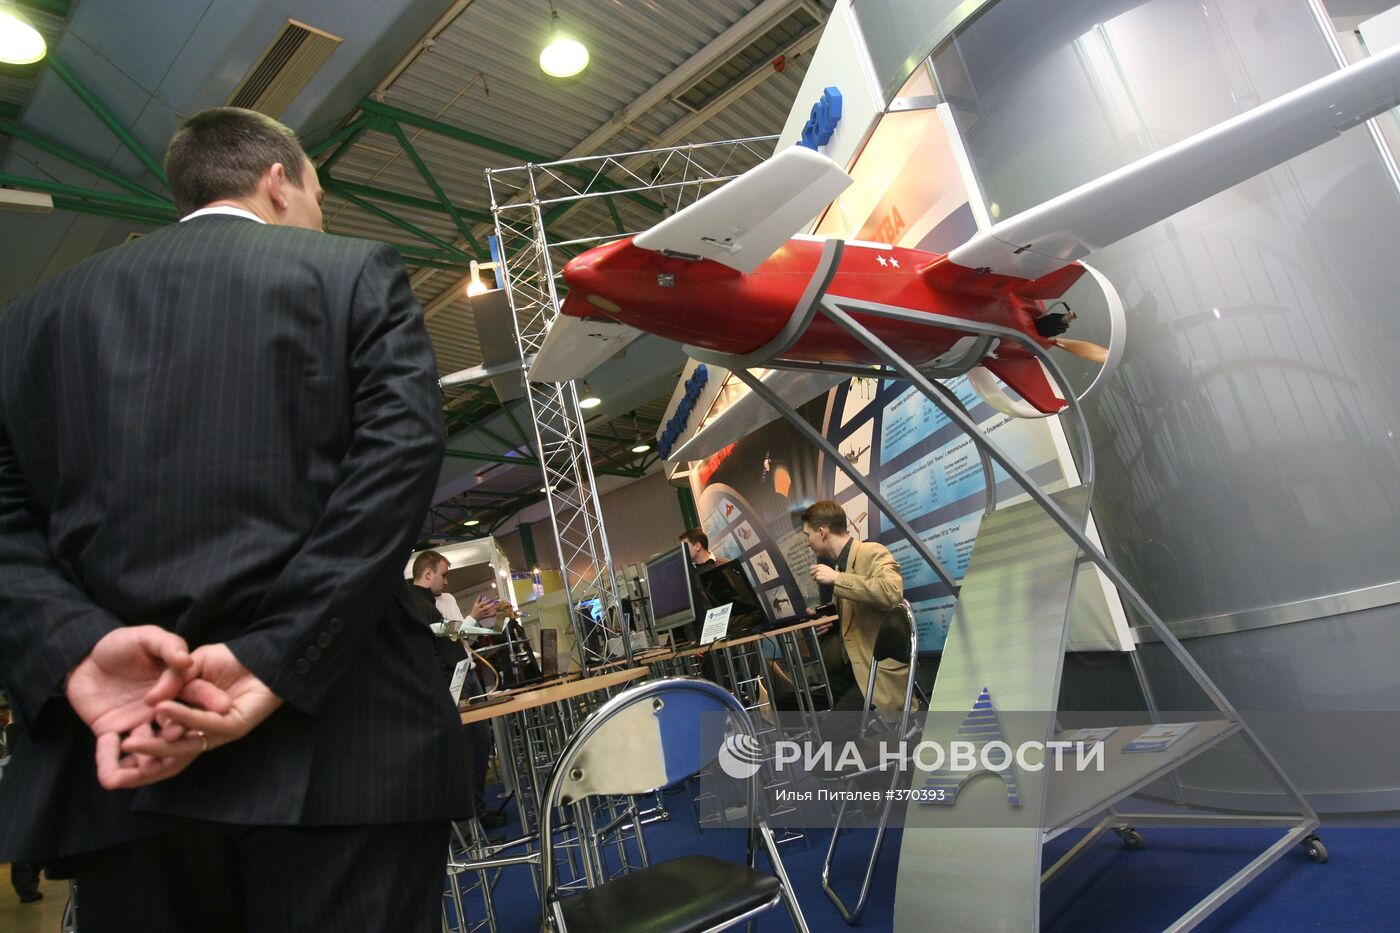 Форум и выставка «UVS - TECH 2009» проходит в Москве